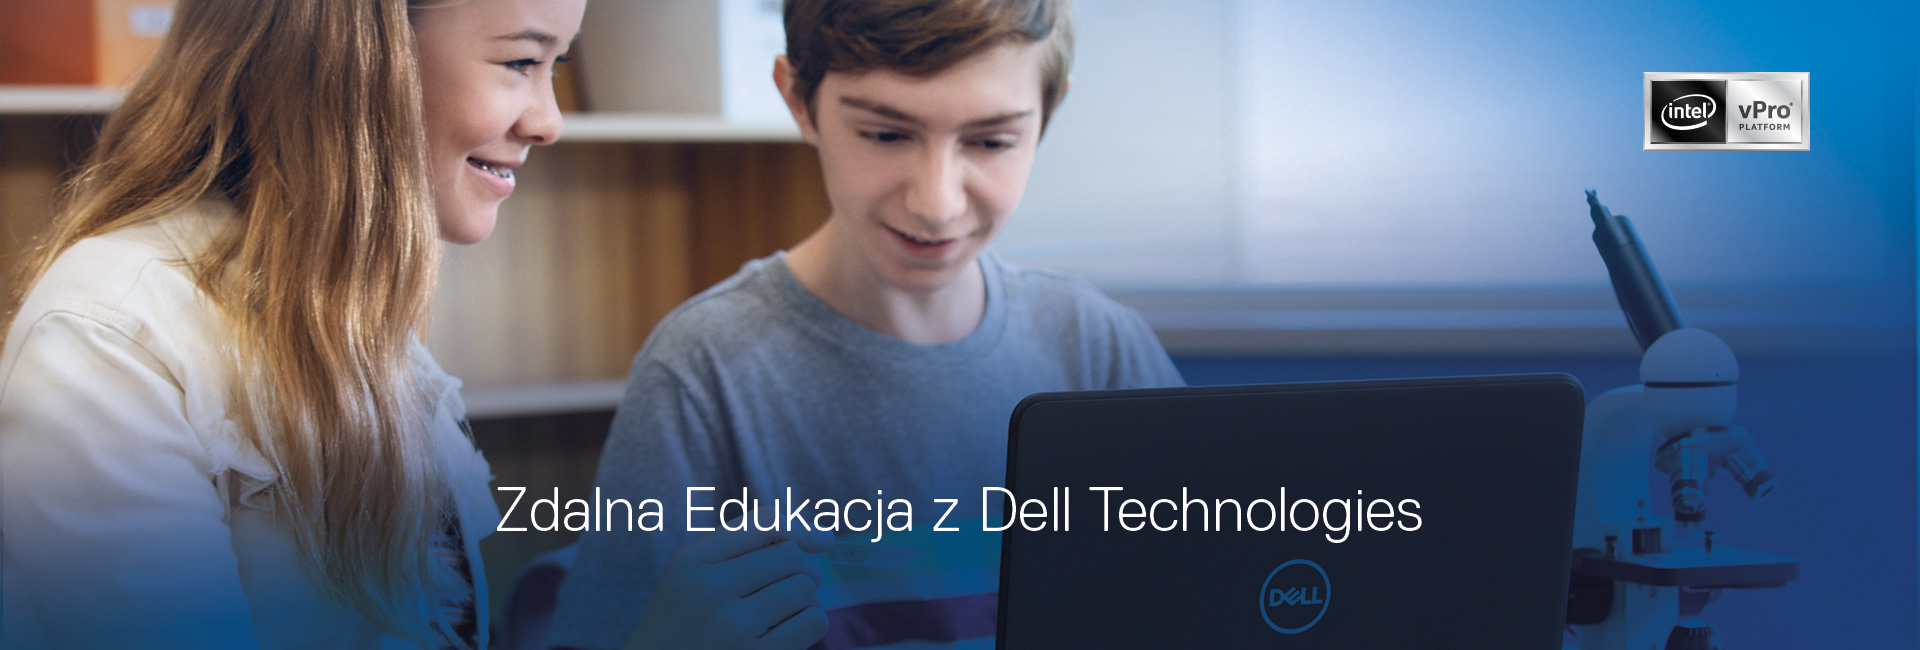 Zdalna Edukacja z Dell Technologies